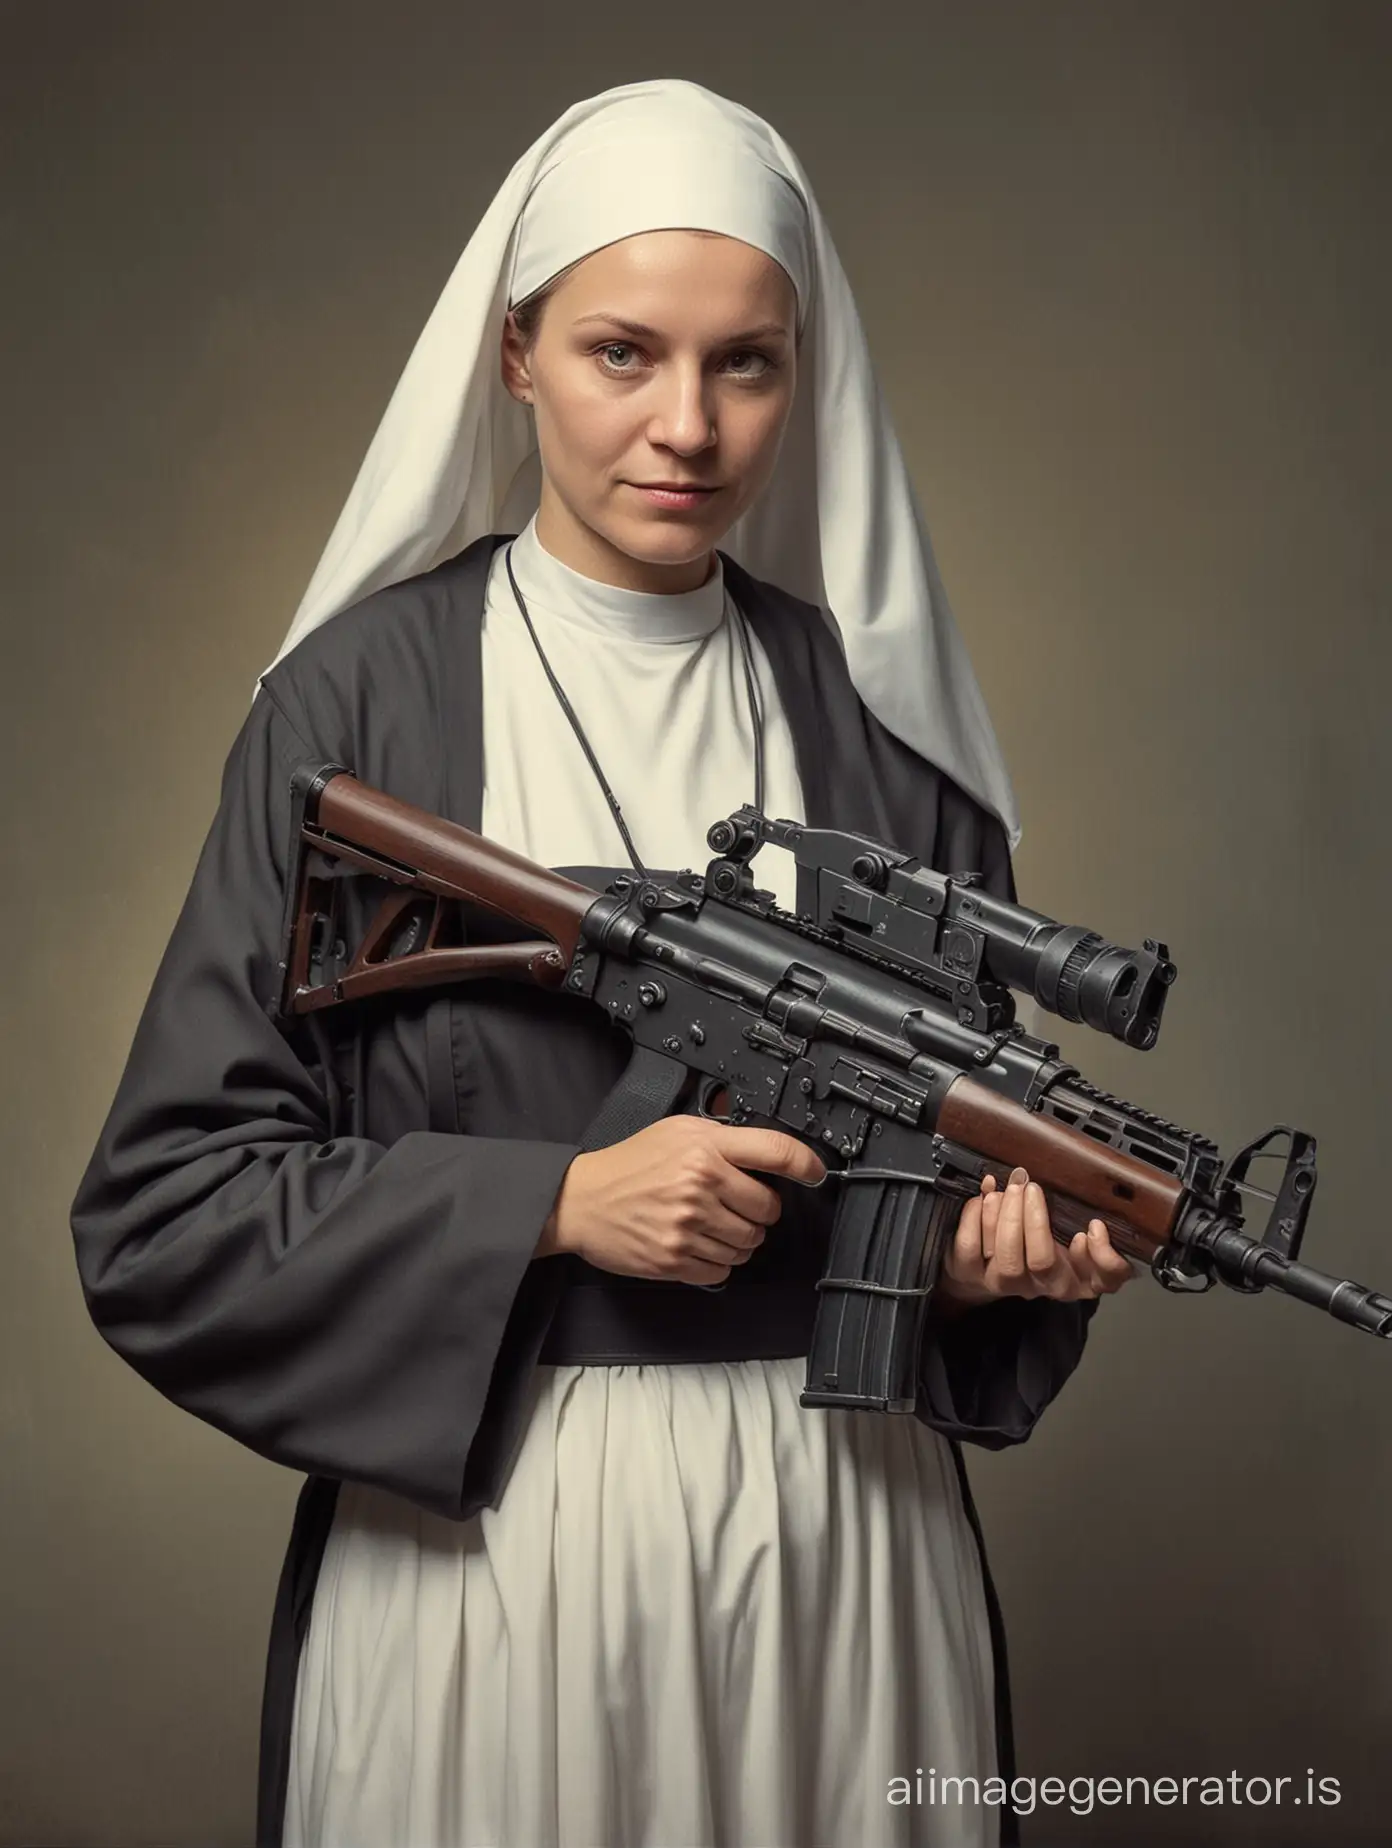 Nun-Holding-Submachine-Gun-in-Intense-Pose